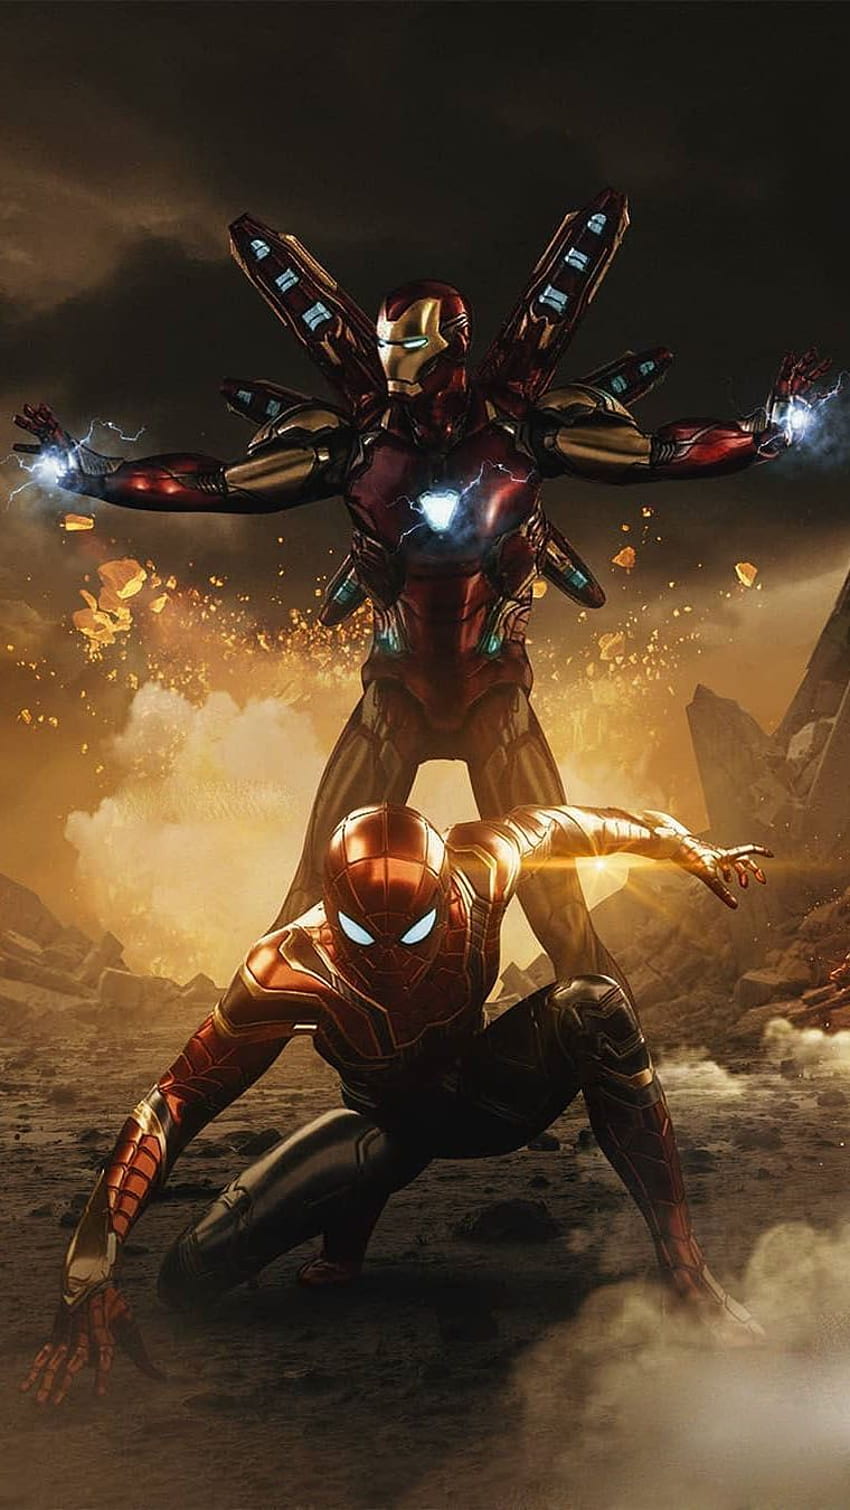 Iron Spidey y Iron Man iPhone - iPhone. Vengadores de Iron Man, superhéroes de Marvel, Iron Man, Spider Man End Game fondo de pantalla del teléfono